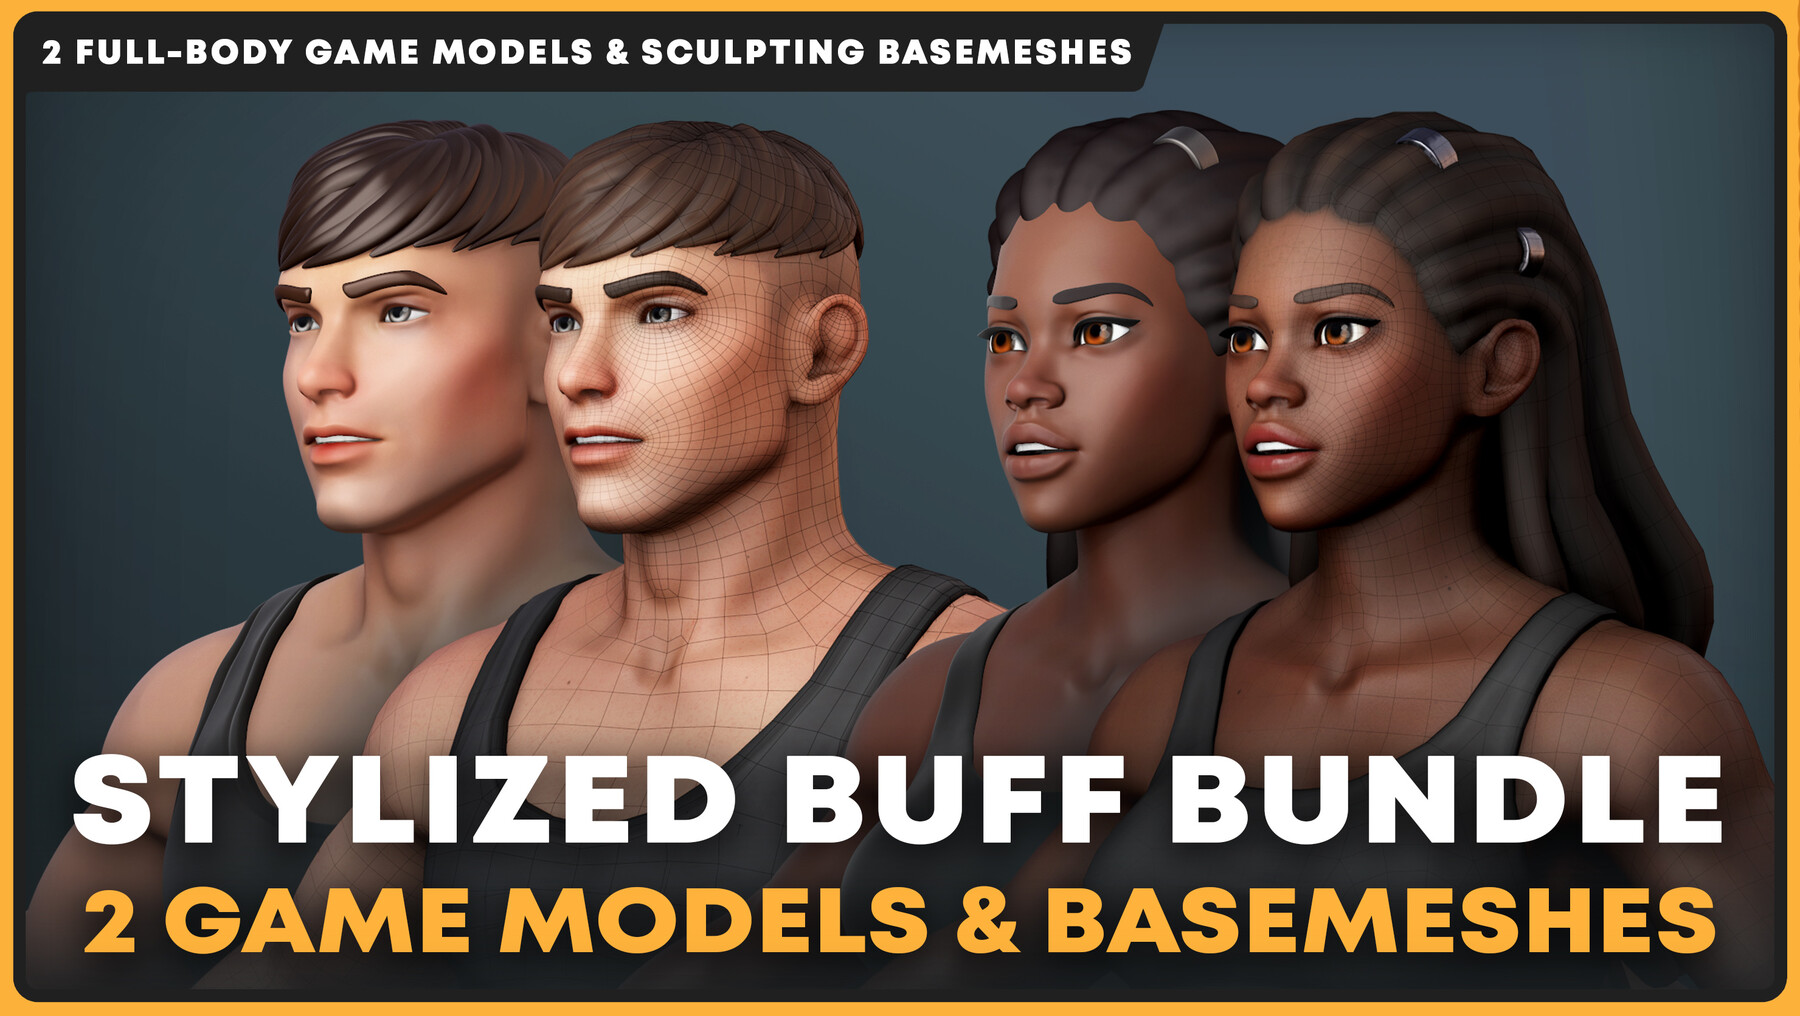 ArtStation - Stylized Buff Game Models & Basemeshes Bundle | Game Assets